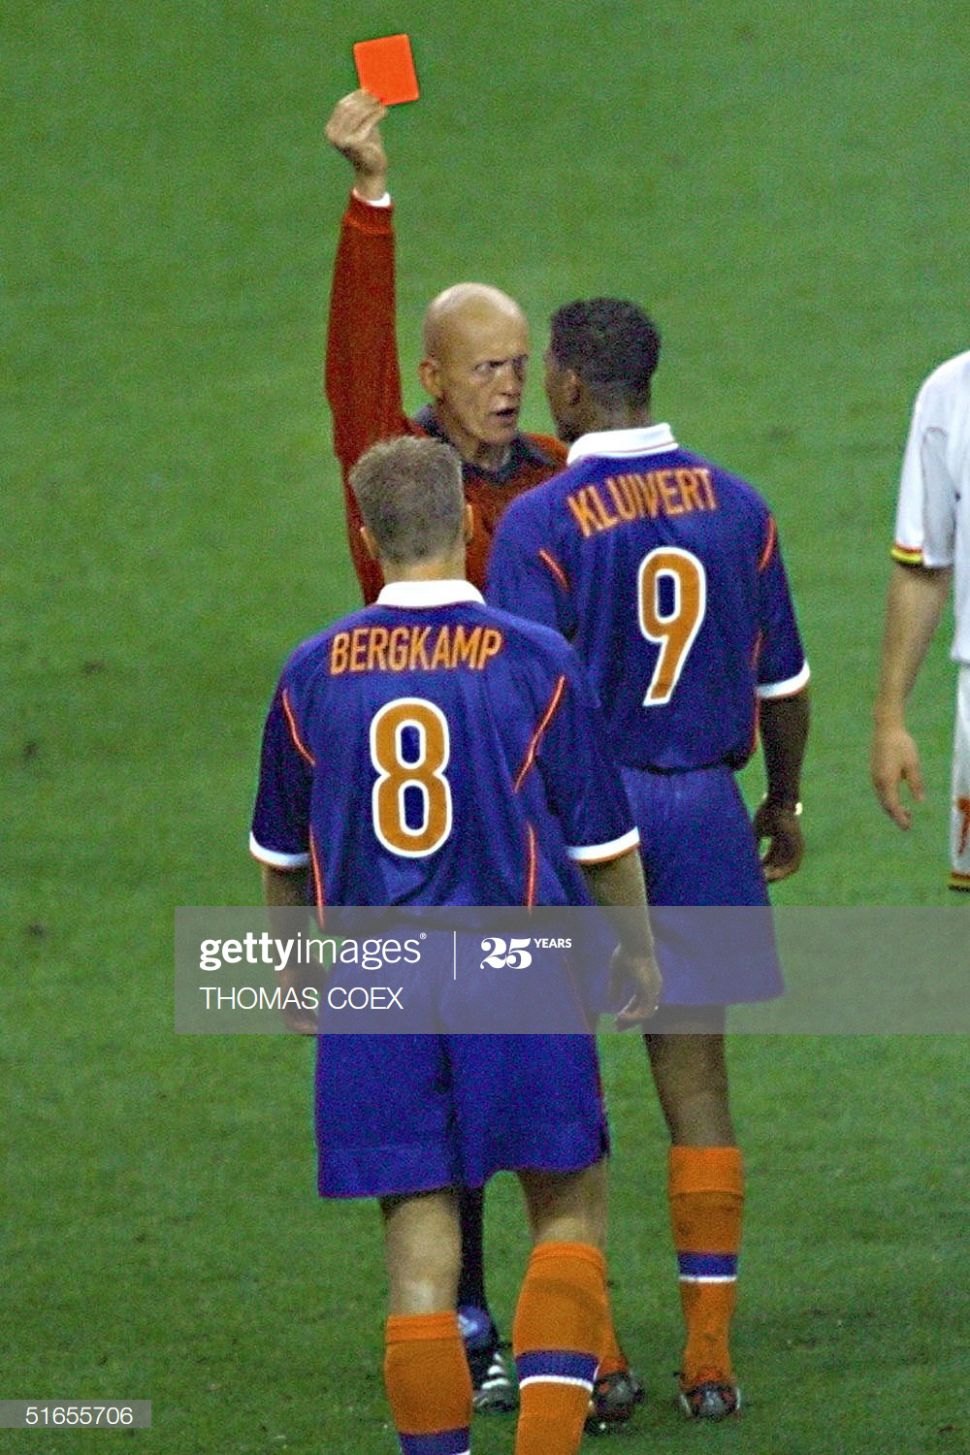 Áo Bergkamp 8 Netherlands World Cup1998 away Holland 1999-2000 shirt